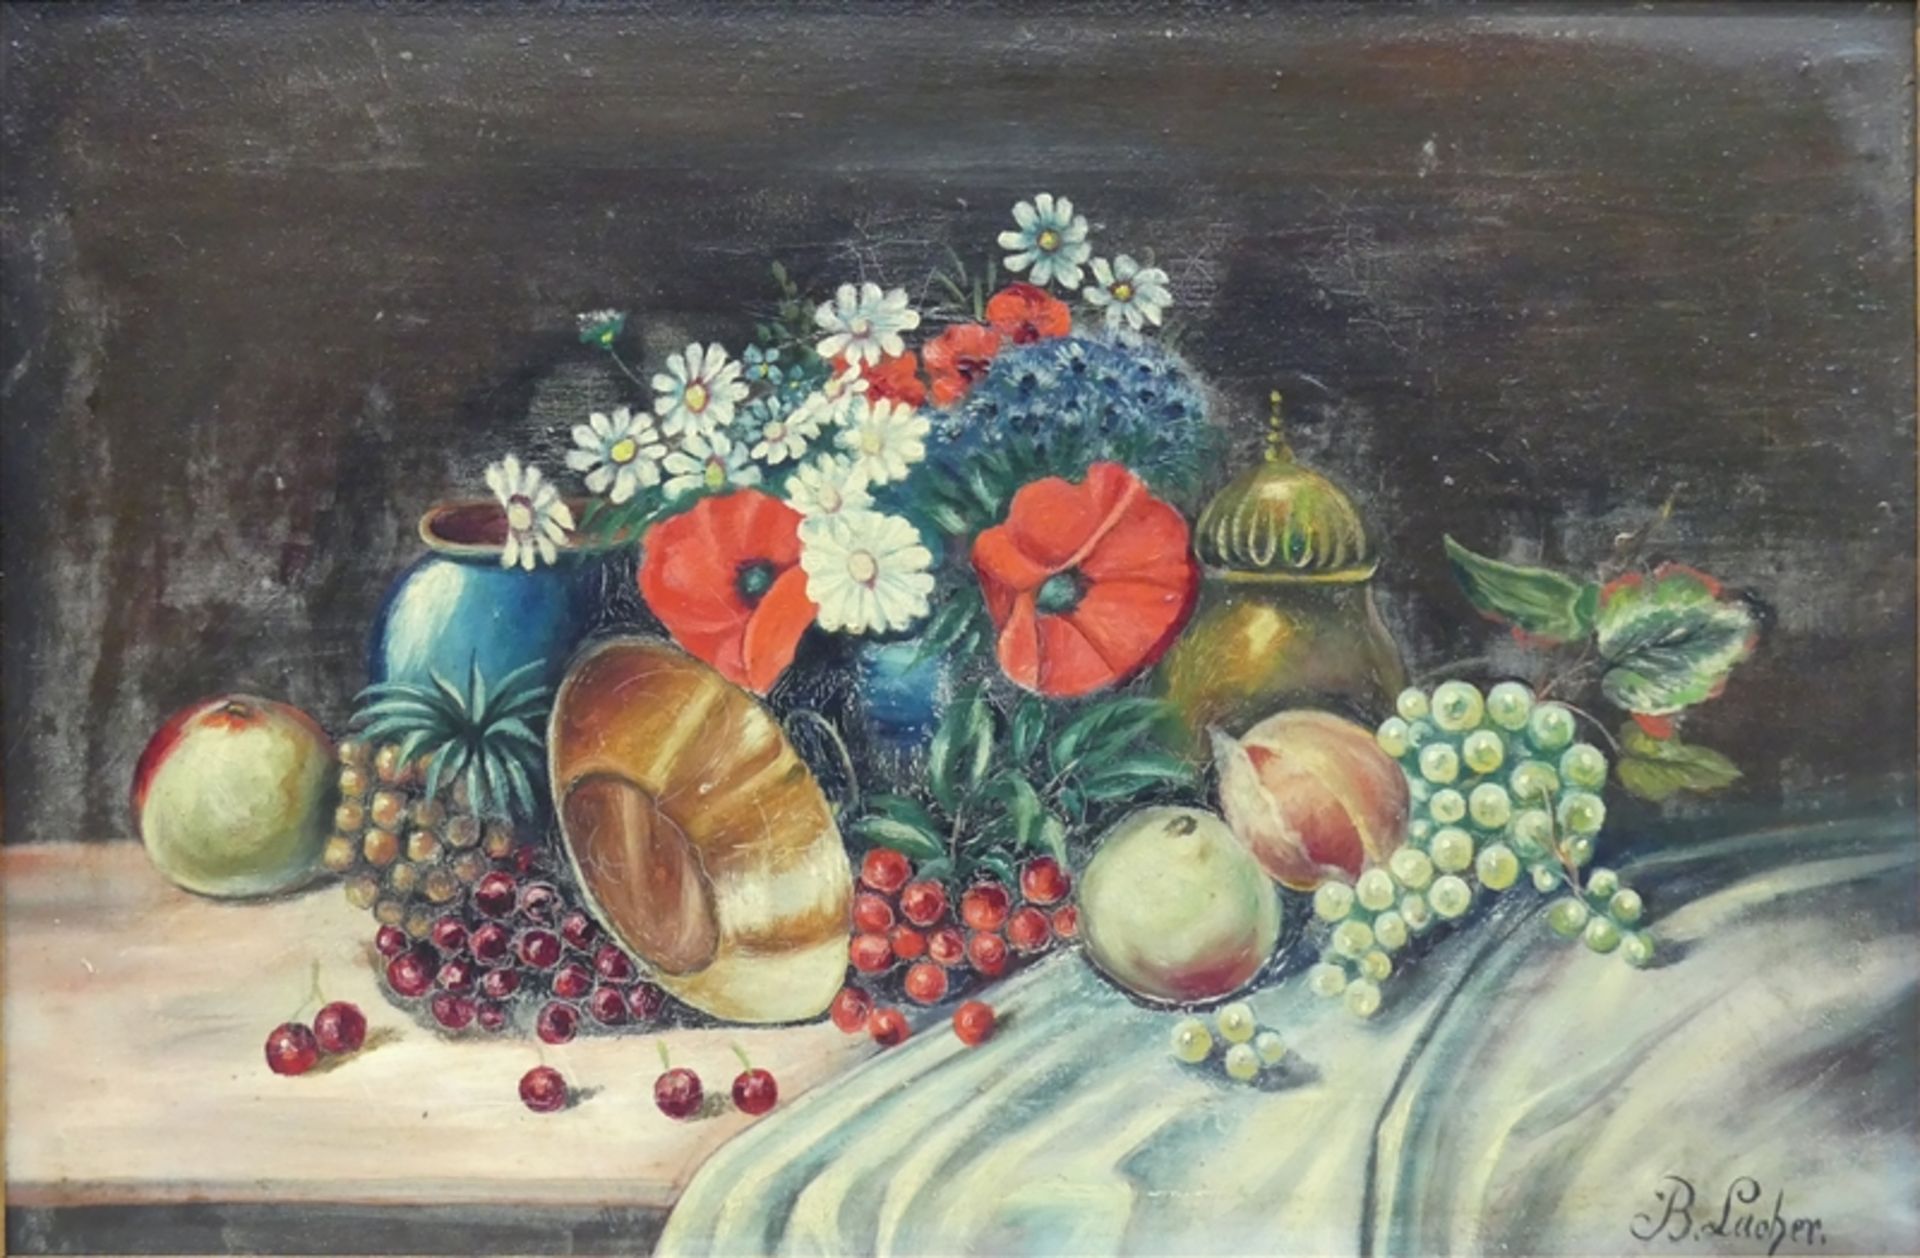 Lacher, B. Öl auf Leinen, Stillleben mit Blumen und Früchten, rechts unten signiert, 30x45 cm,